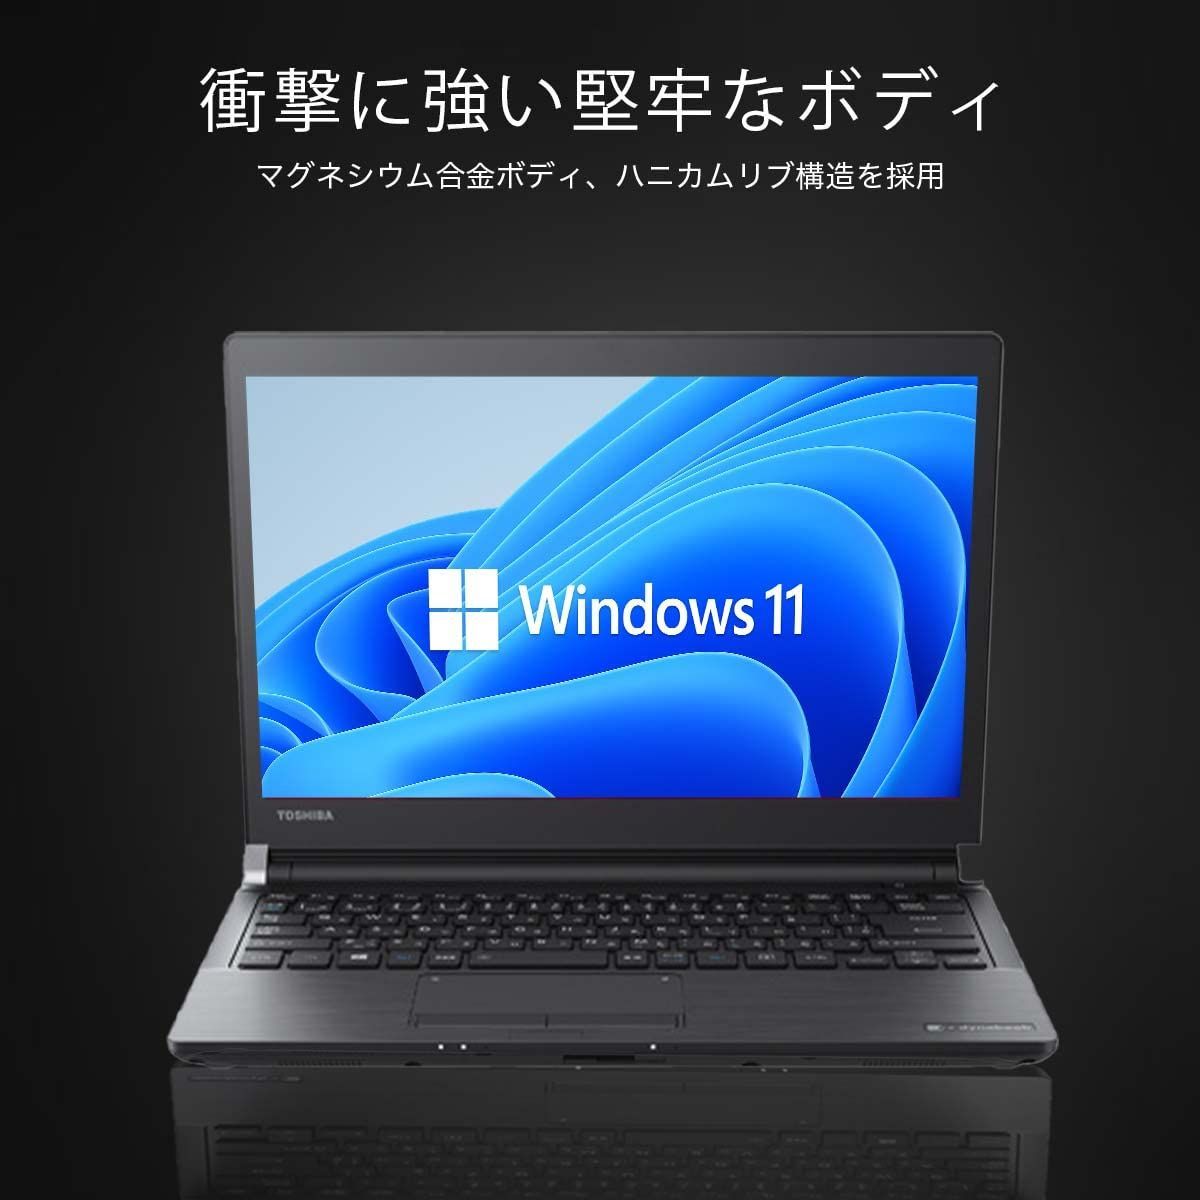 【人気商品】dynabook ノートPC ノートパソコン R73 Office搭載 Windows11 ノートパソコン 13.3型 第6世代Core  ダイナブック i5 無線LAN SSD256GB8GBメモリ 東芝 SSD:256GB メモリ:8GB